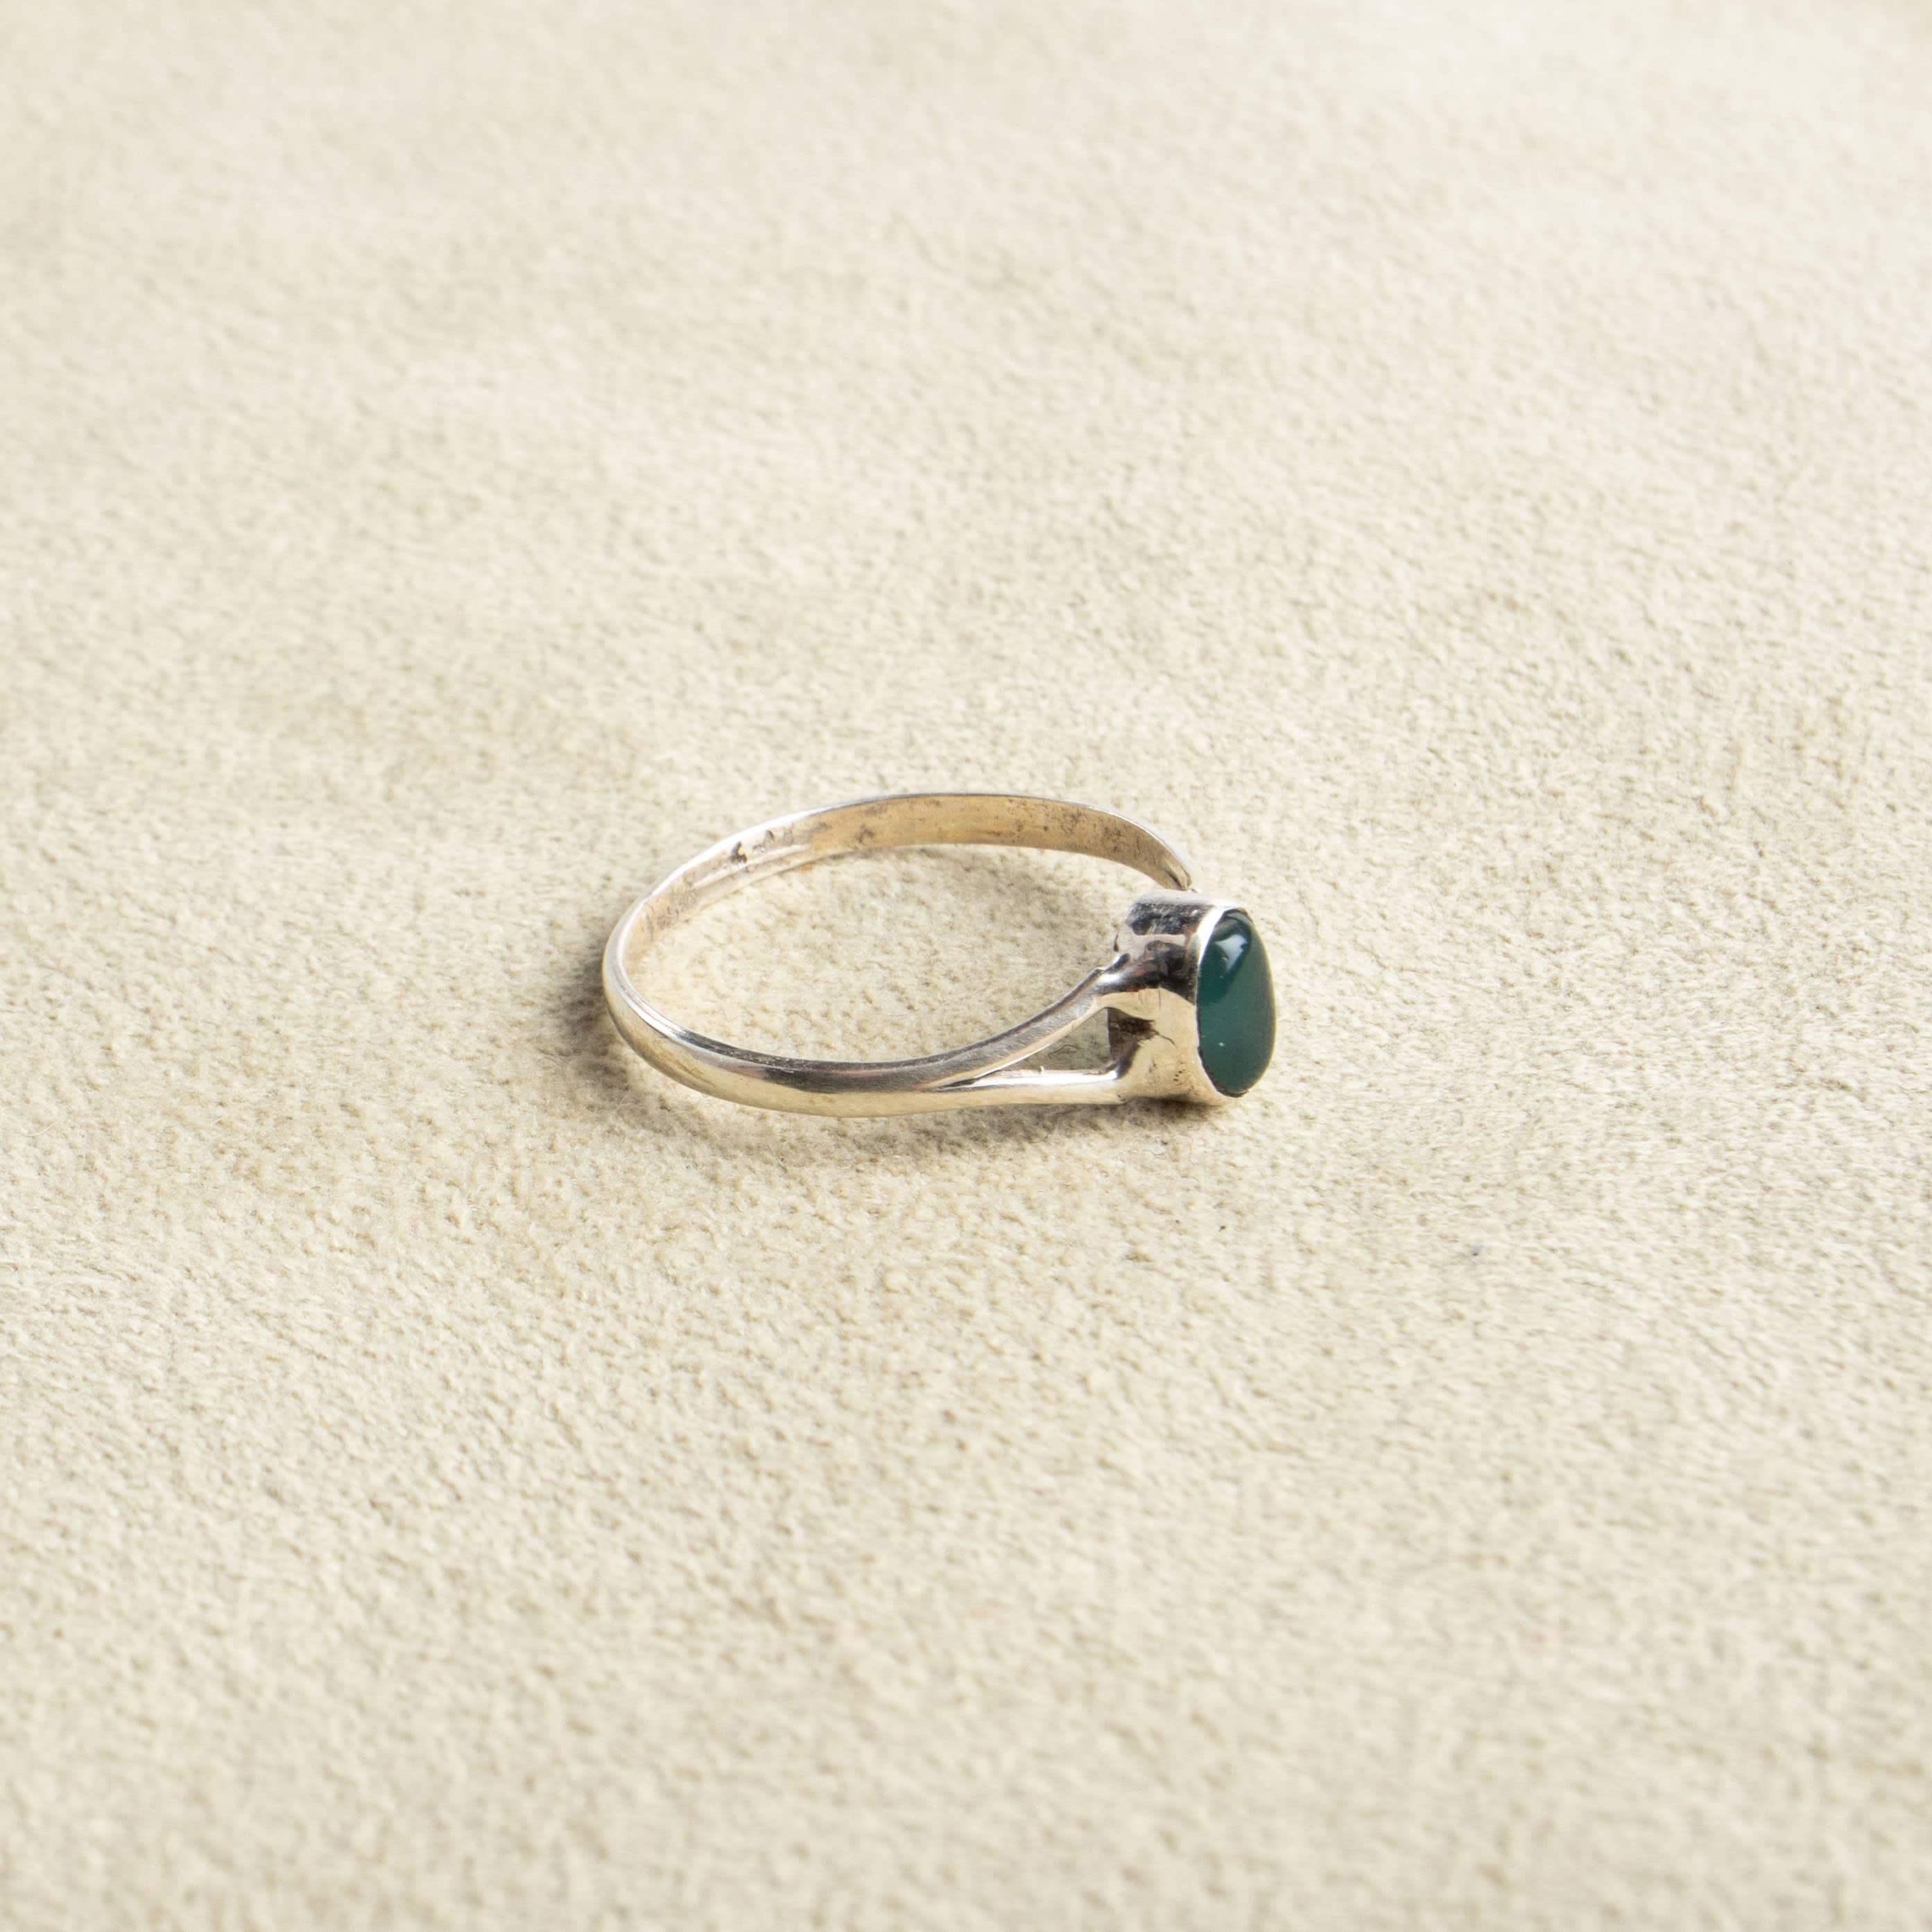 Kleiner grüner Onyx Ring mit ovalem Stein aus 925 Sterling Silber handgemacht - NooeBerlin